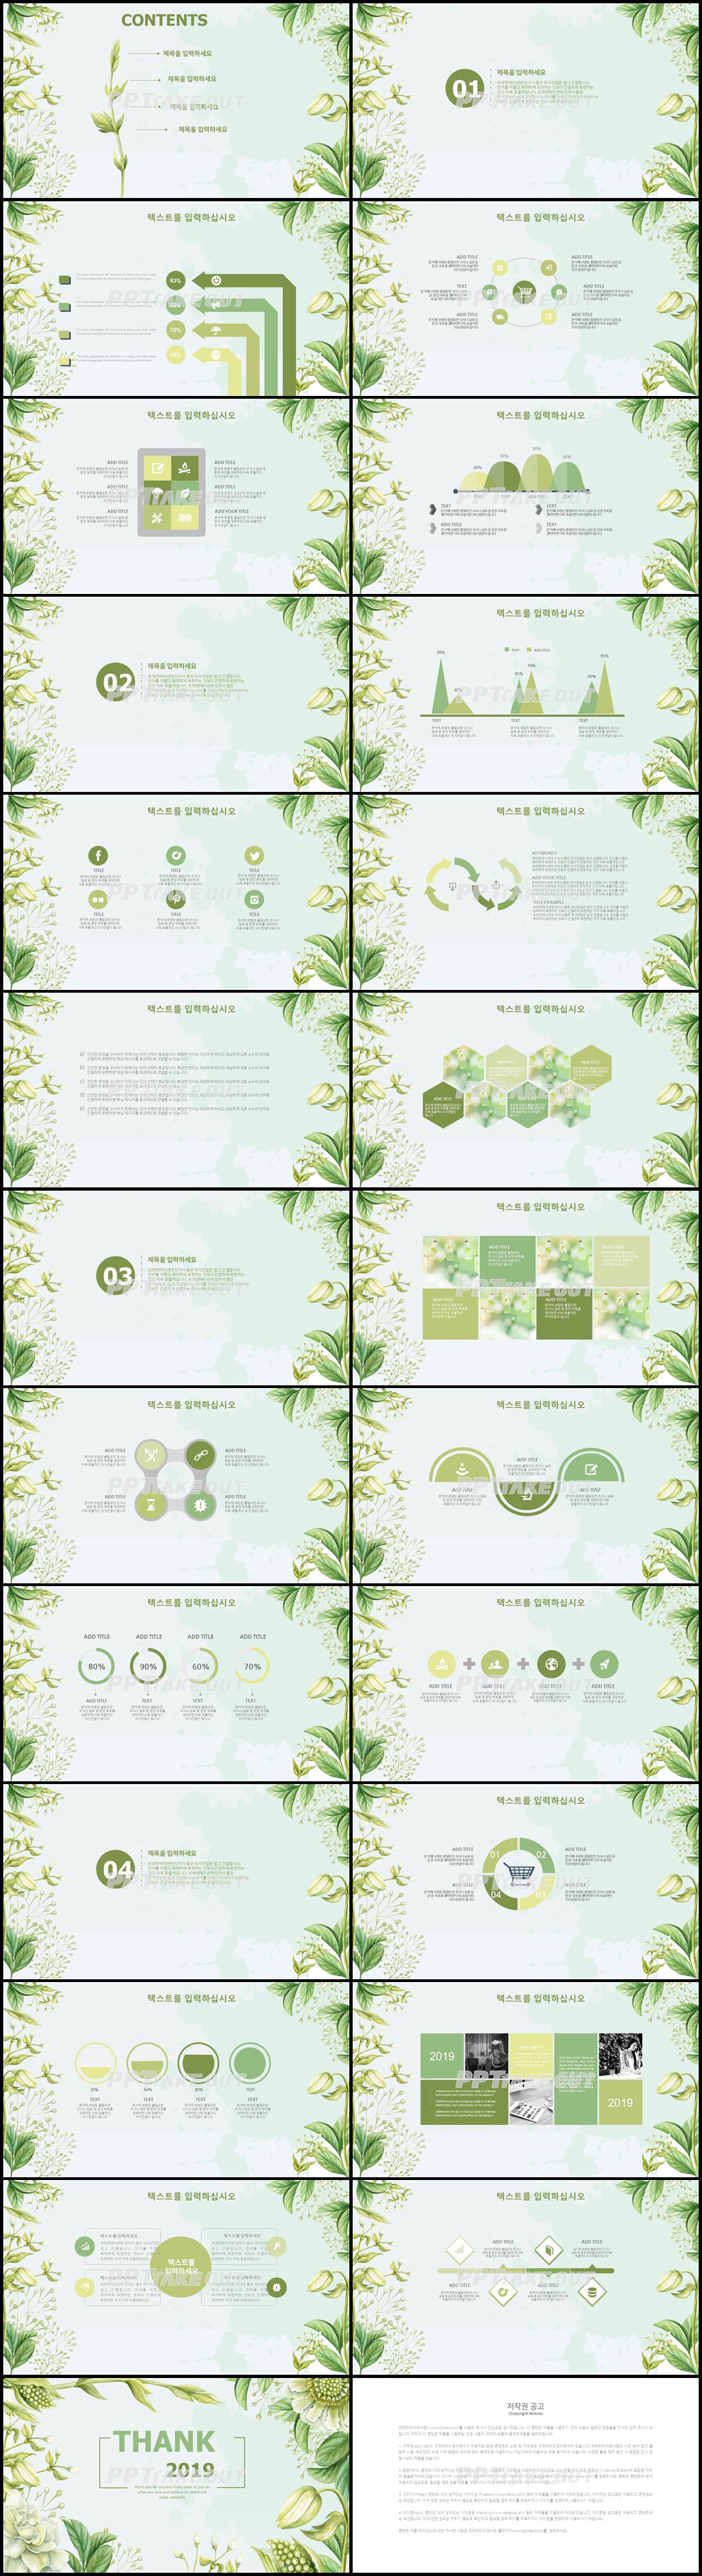 꽃과 동식물 주제 초록색 예쁜 멋진 피피티테마 다운로드 상세보기